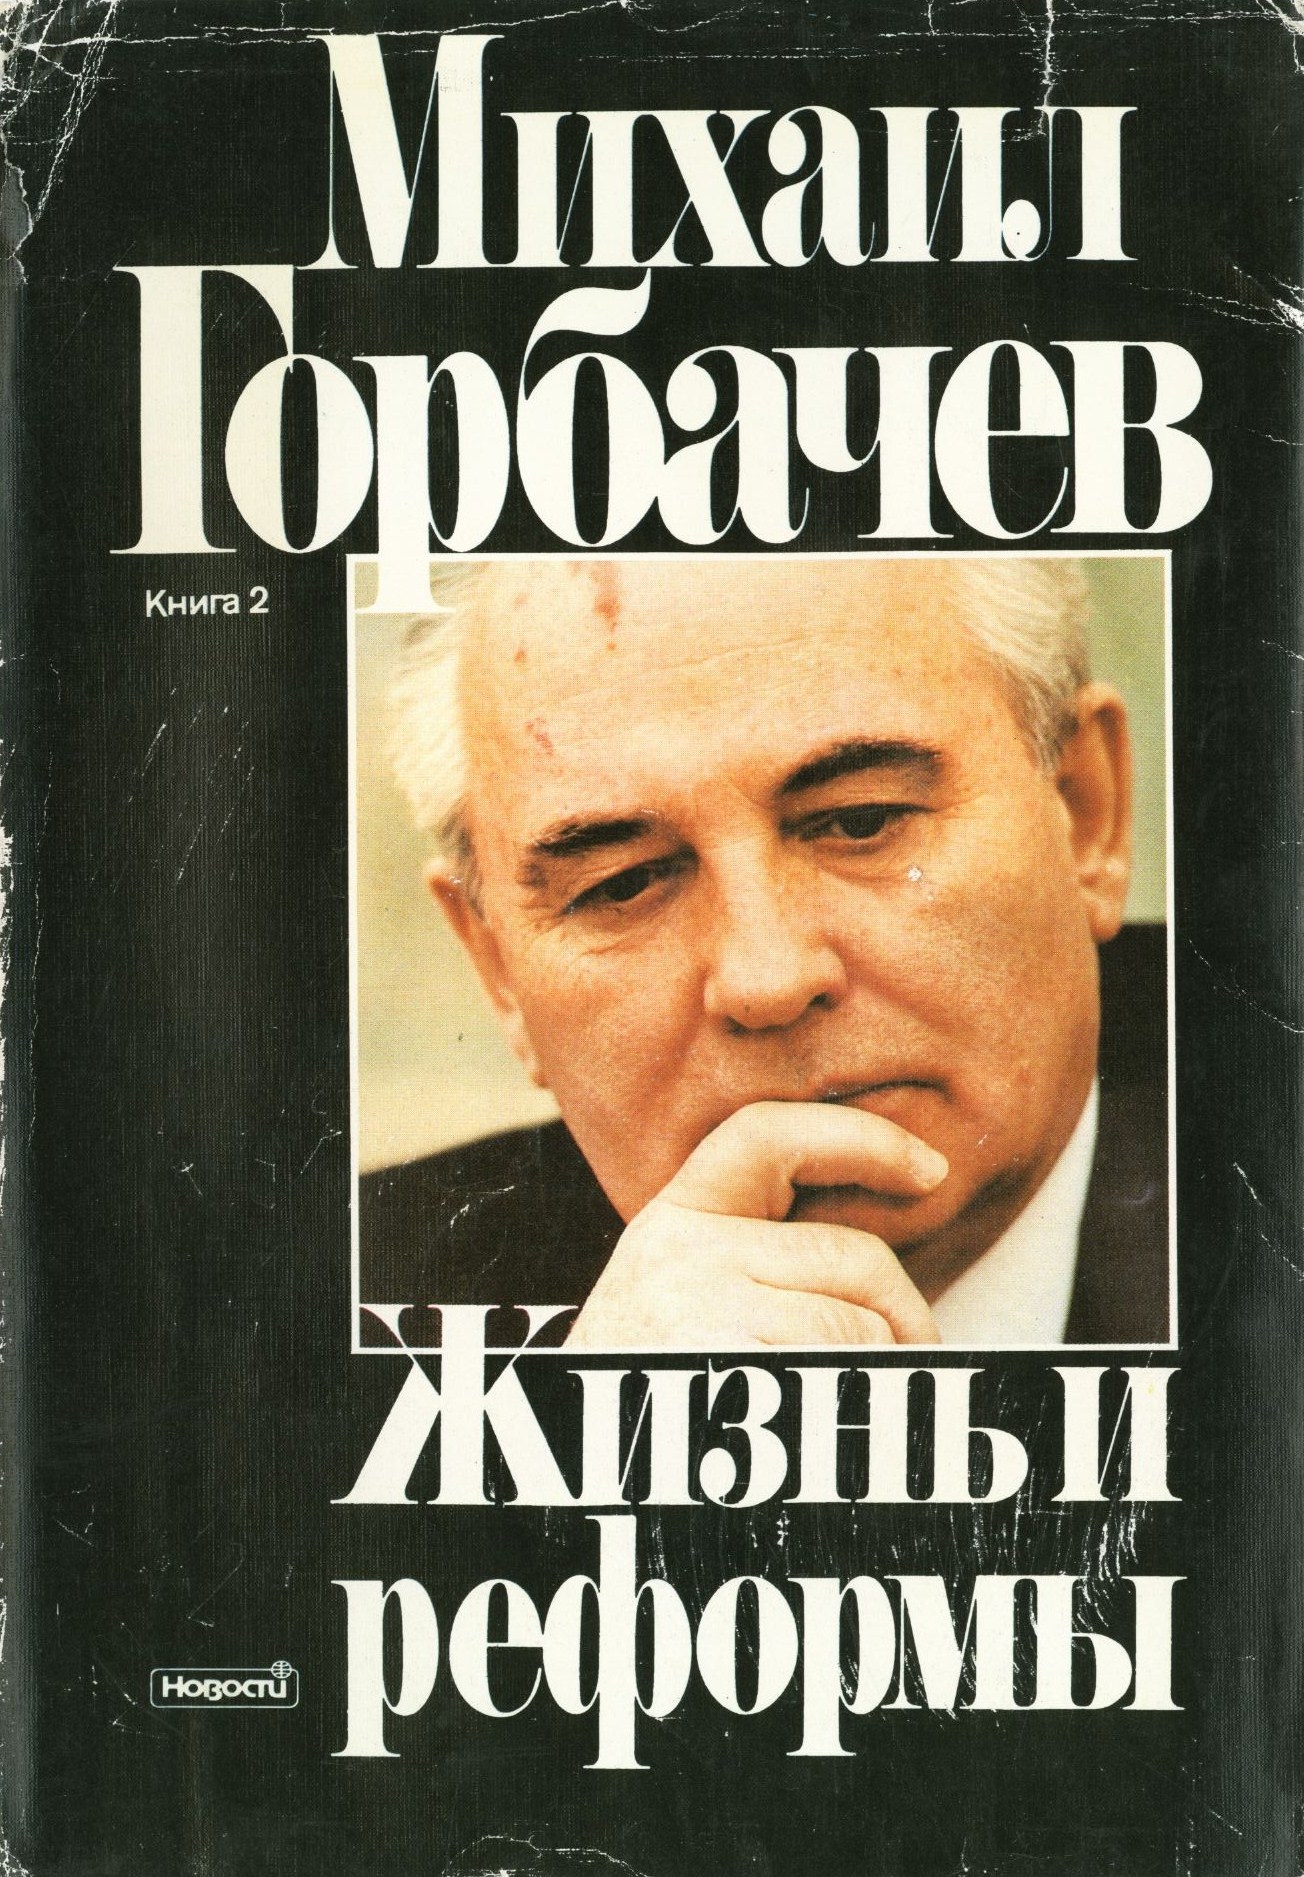 Горбачев книга скачать